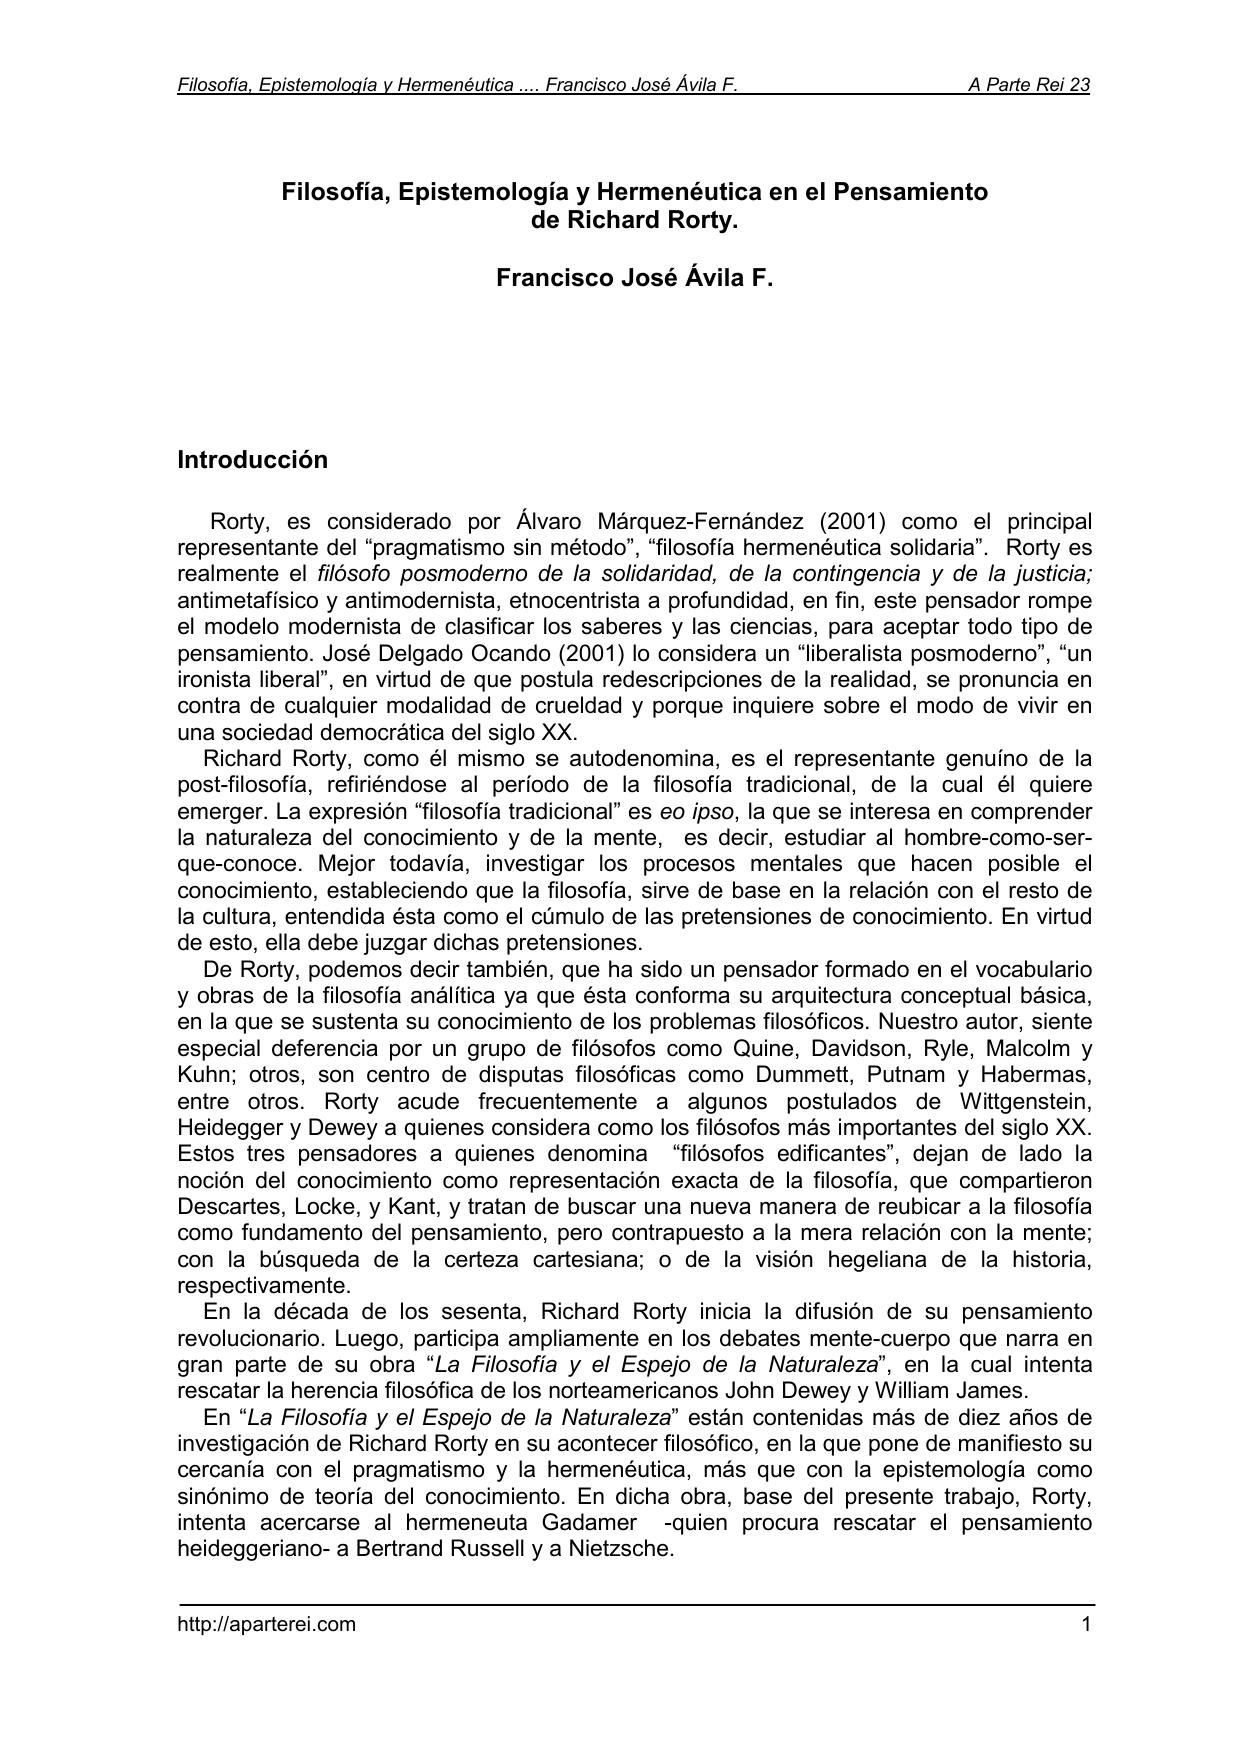 Filosofía, Epistemología y Hermenéutica en el Pensamiento de Richard Rorty - Artículo